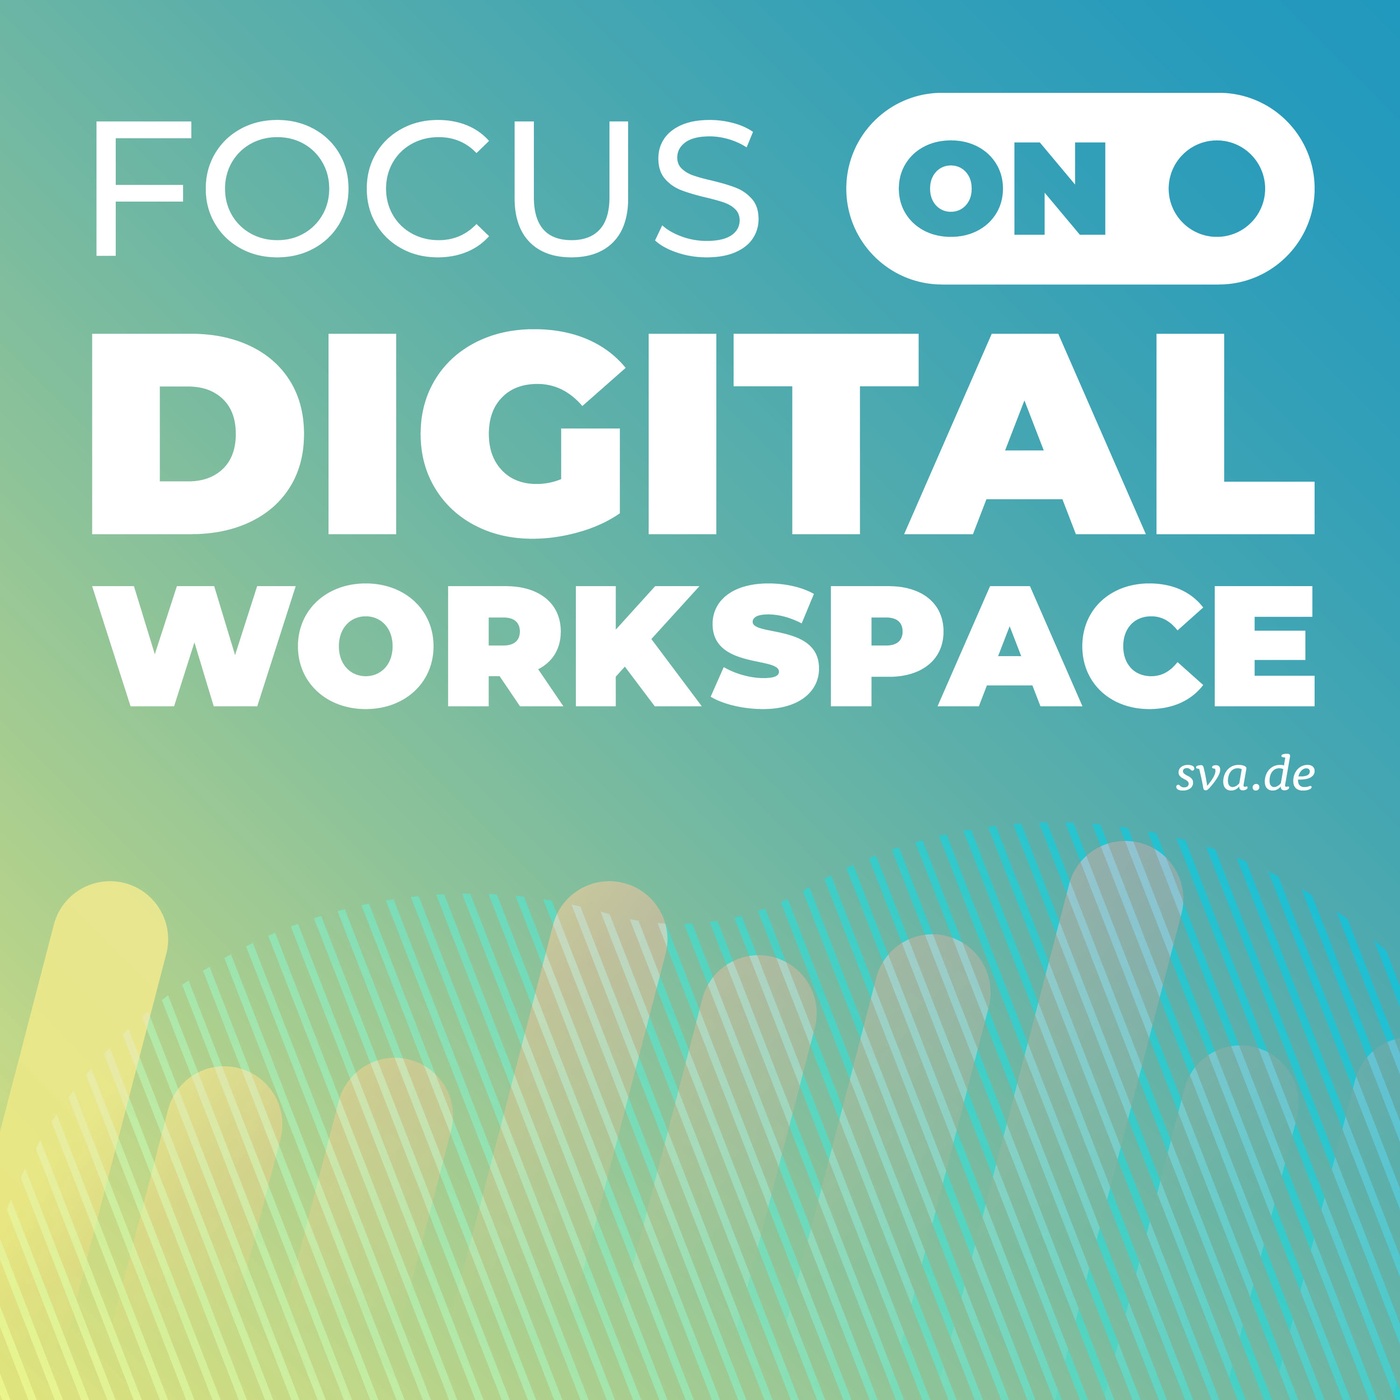 FOCUS ON: Digital Workspace